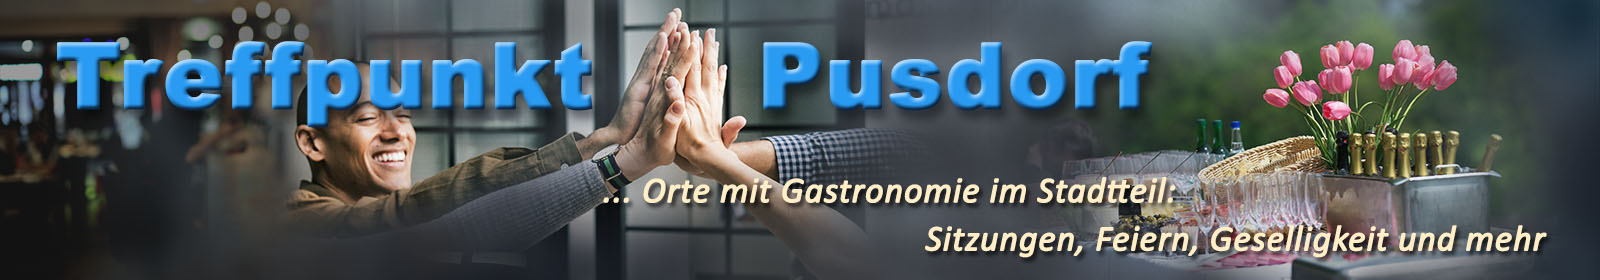 pusdorf.info – Café Pusdorf mit Bäckerei